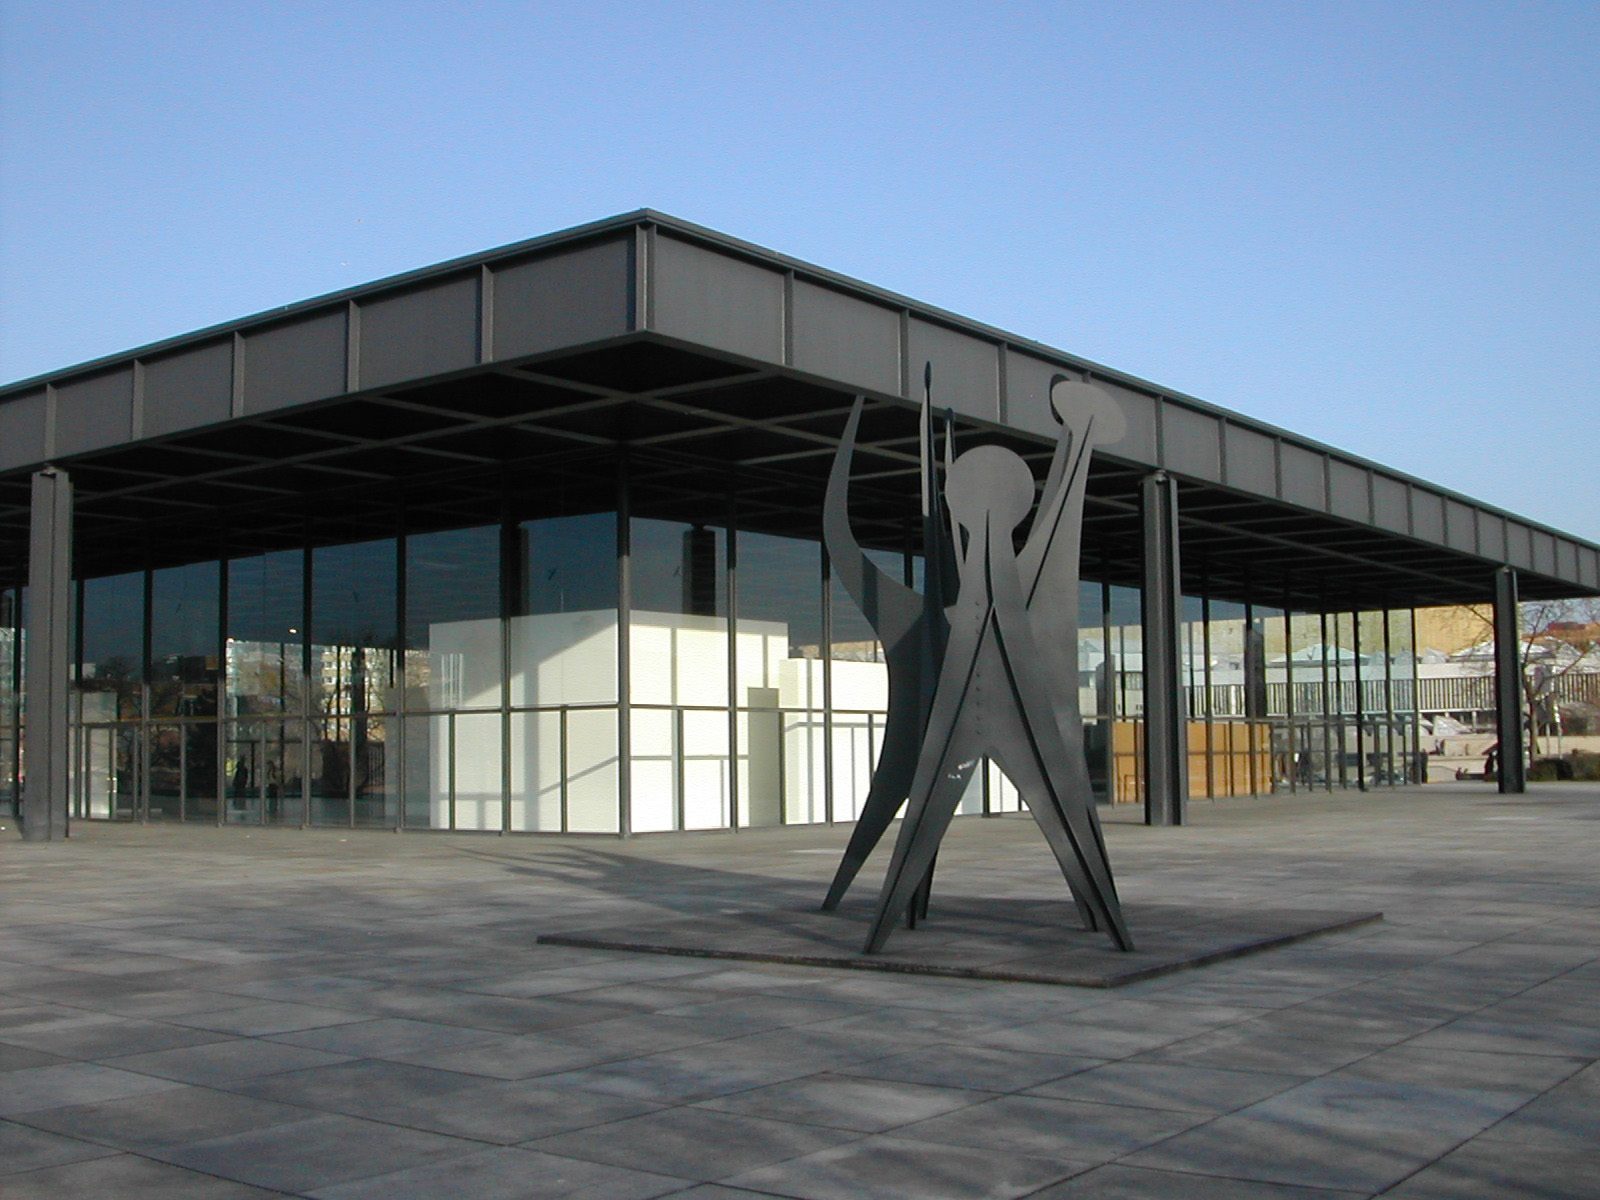 Mies van der Rohe's Neue Nationalgalerie in Berlijn. Afbeelding: Harald Kliems via Wikimedia CC BY-SA 2.0